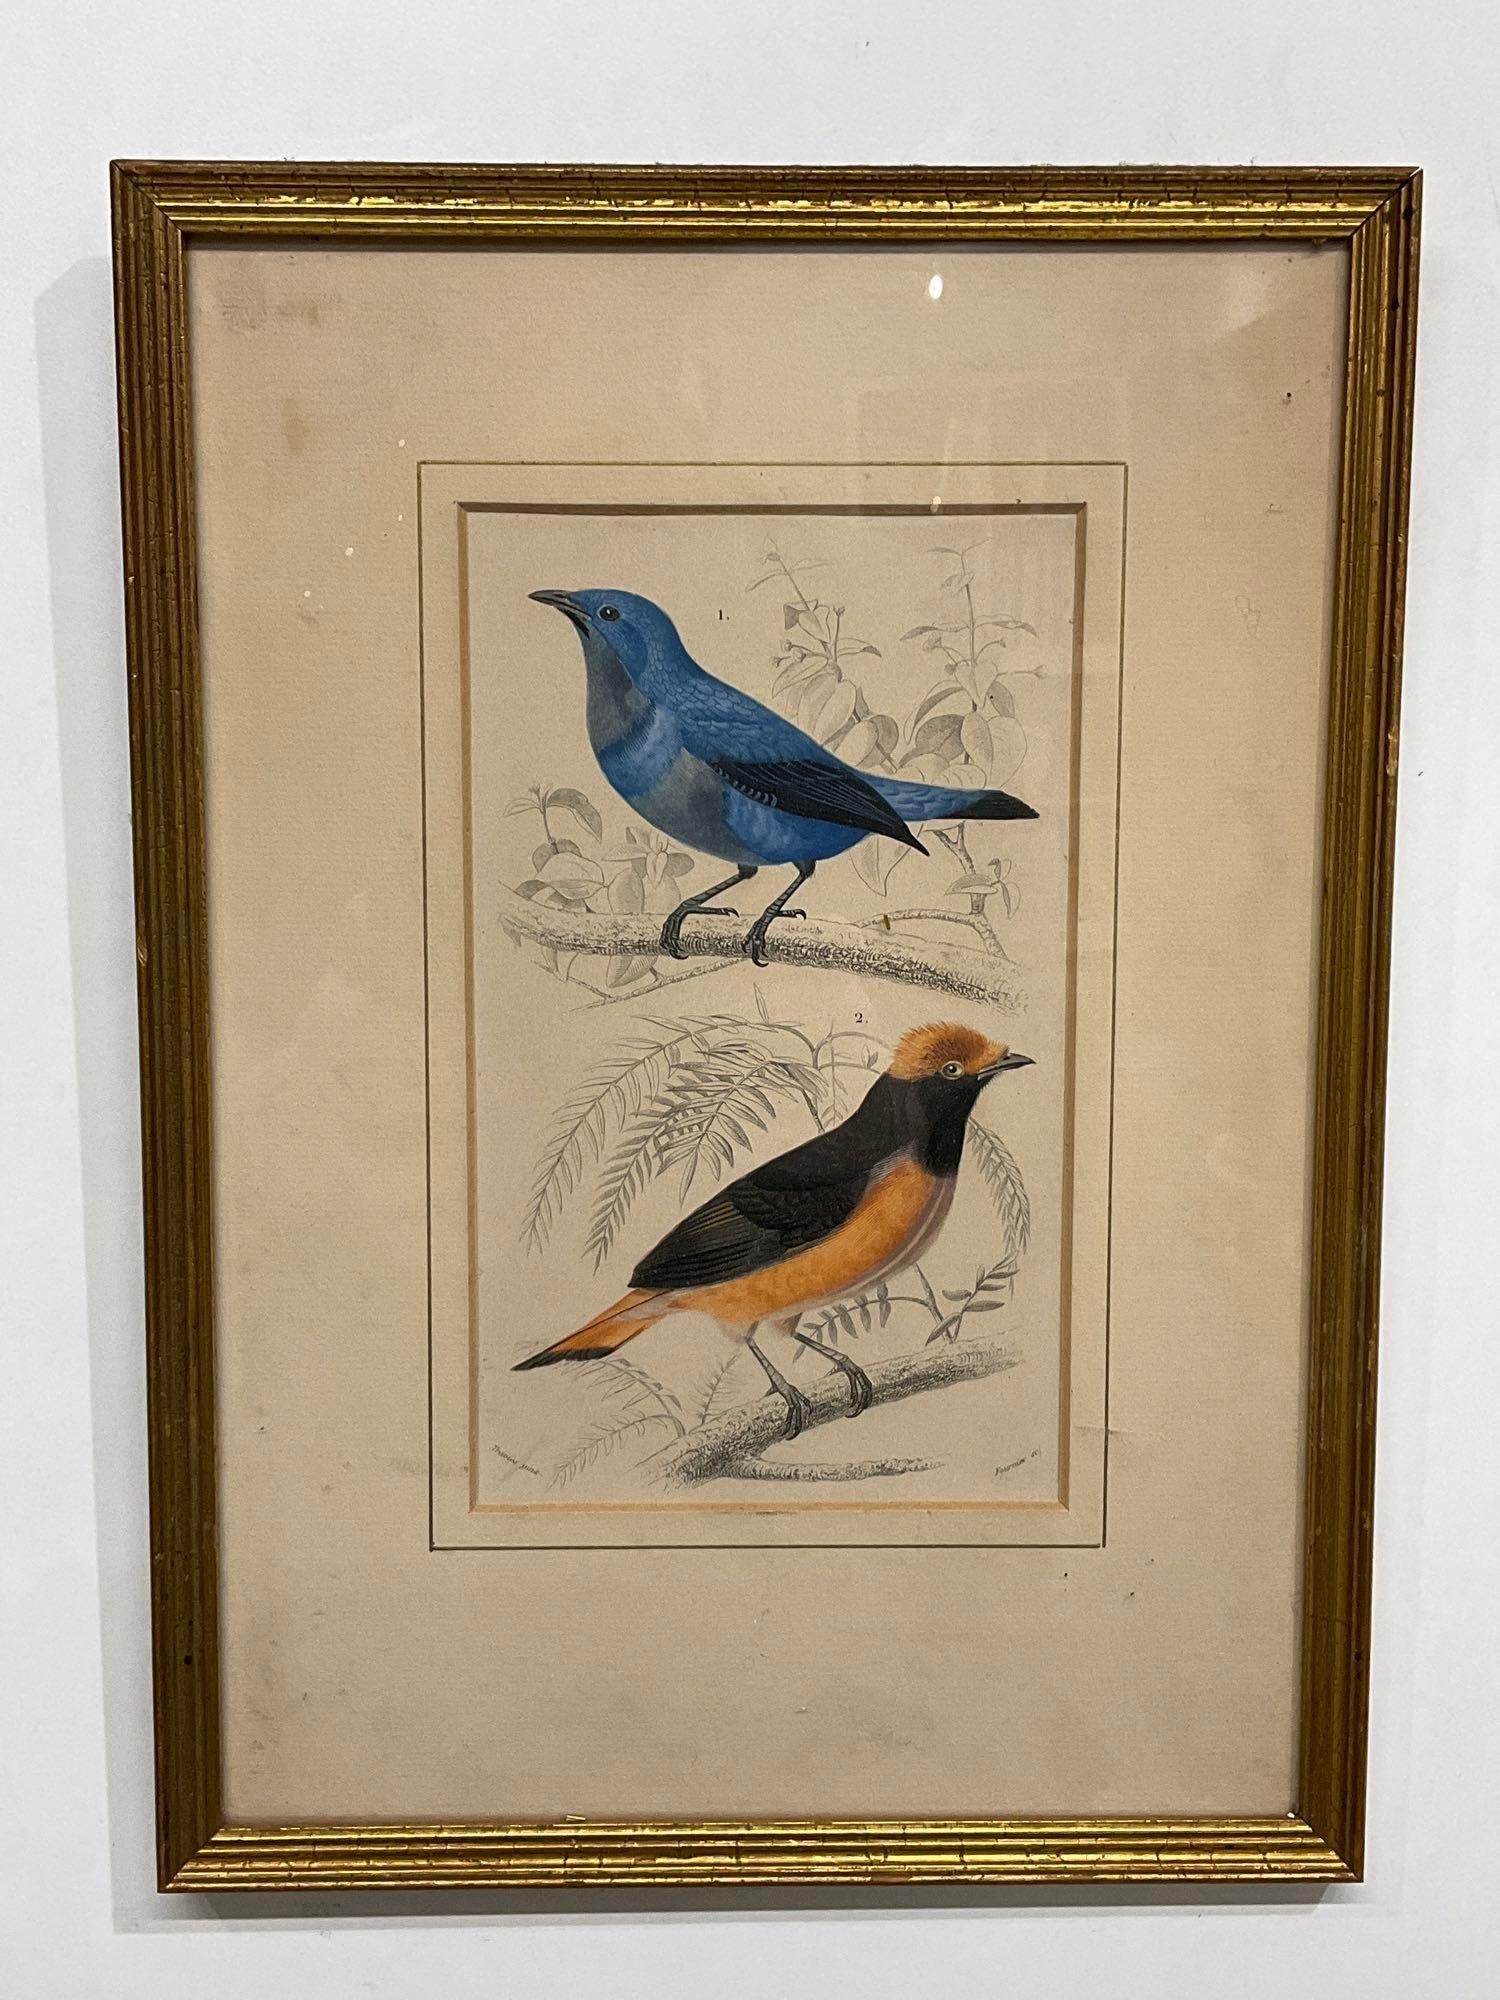 19th century ornithology illustrations - Édouard Traviès